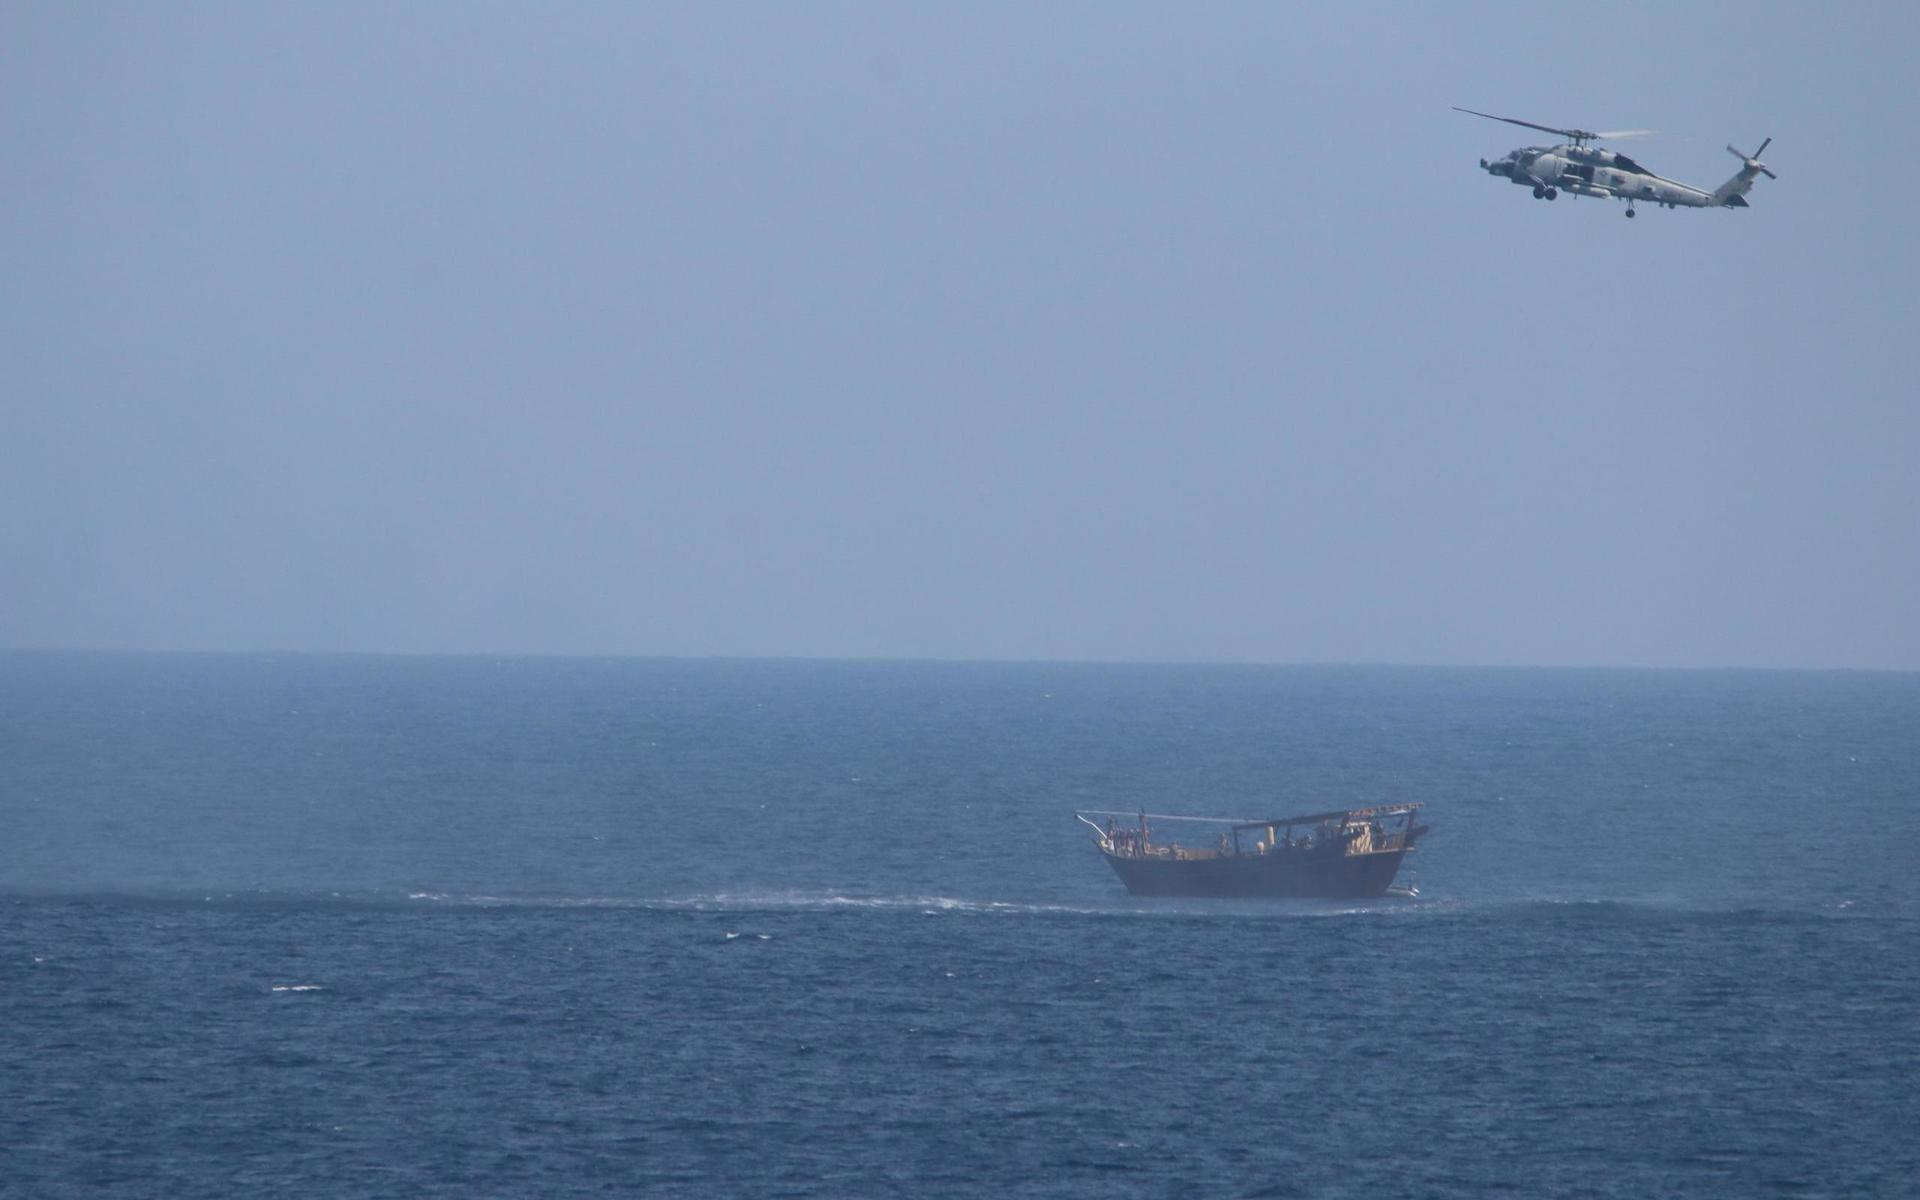 Vapnens ursprung och destination utreds nu. Tidigare vapen som konfiskerats av den amerikanska flottan under liknande omständigheter har varit ämnade för Huthirebeller i Yemen, skriver Pete Pagano, talesperson för Amerikanska flottan i ett mejl till CNN.